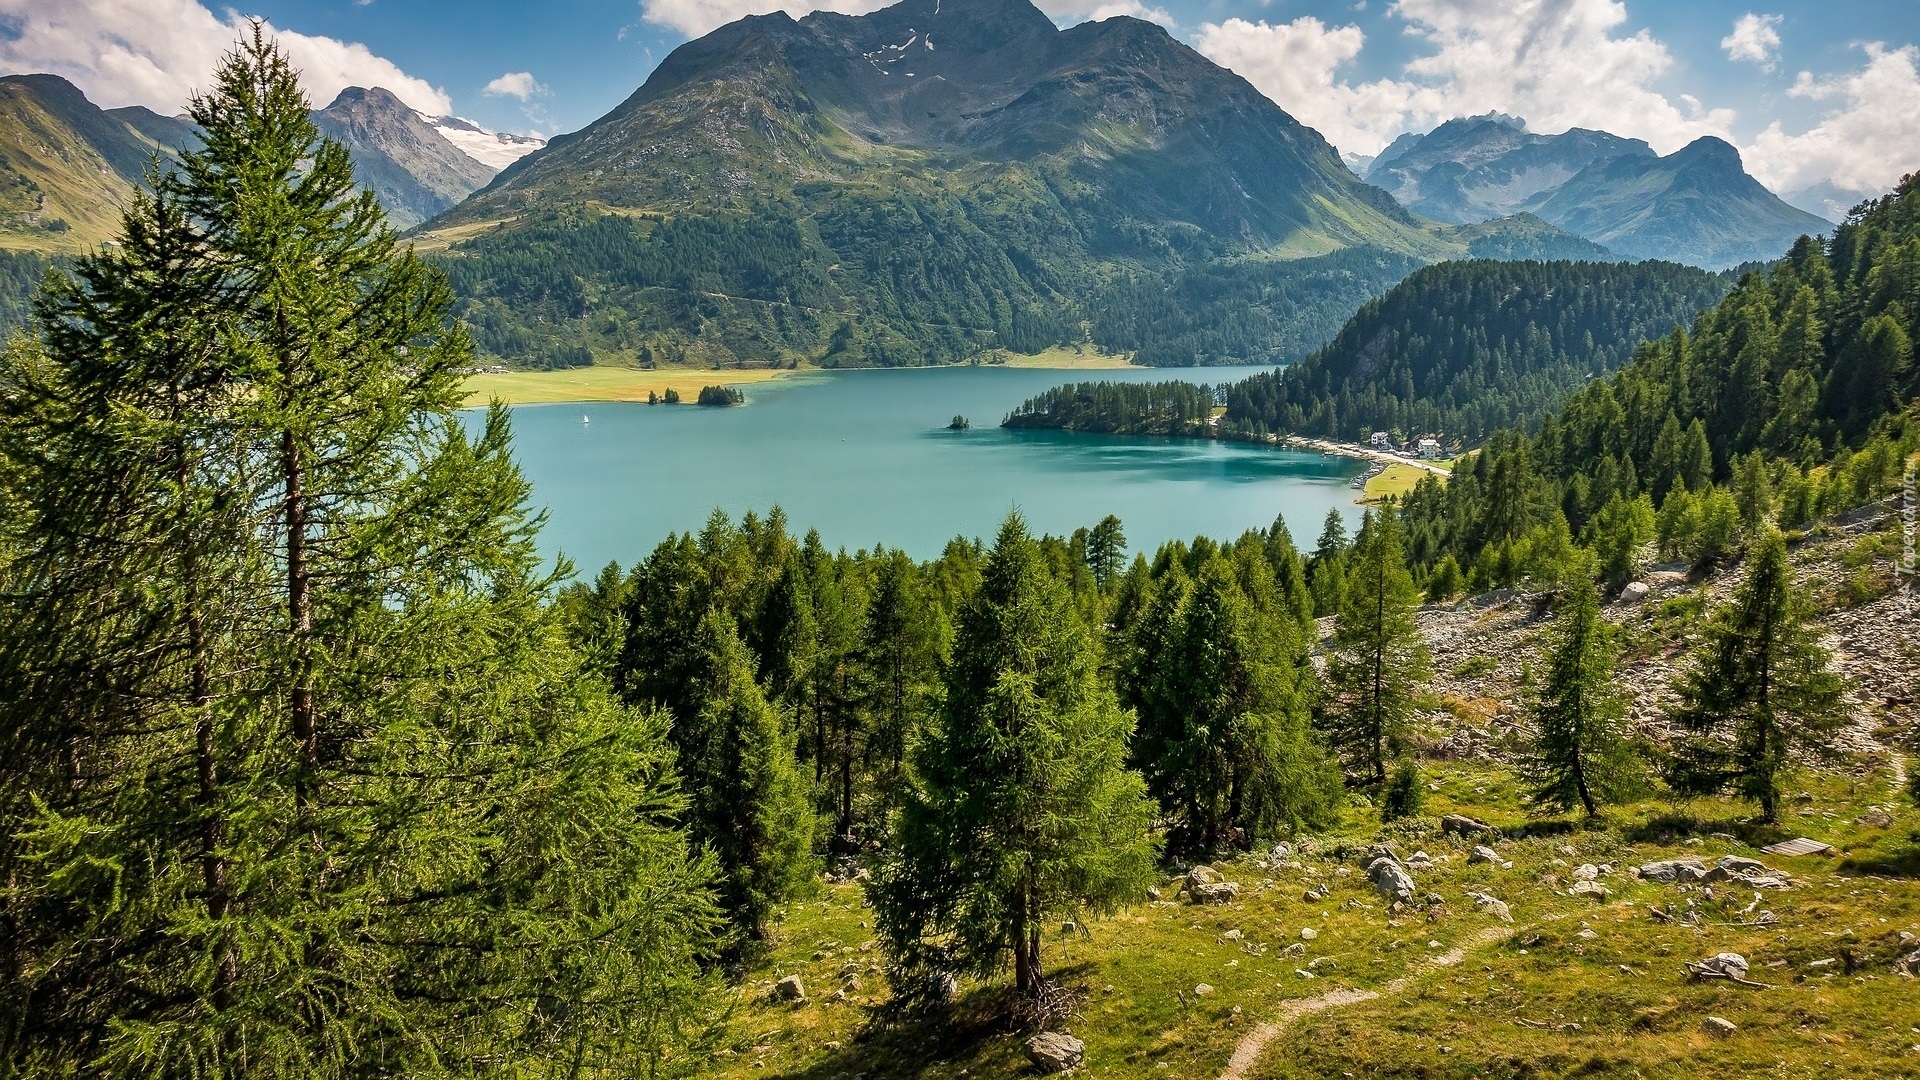 Góry Alpy, Drzewa, Dolina Engadyna, Jezioro Silsersee, Szczyt Piz da la Margna, Kanton Gryzonia, Szwajcaria